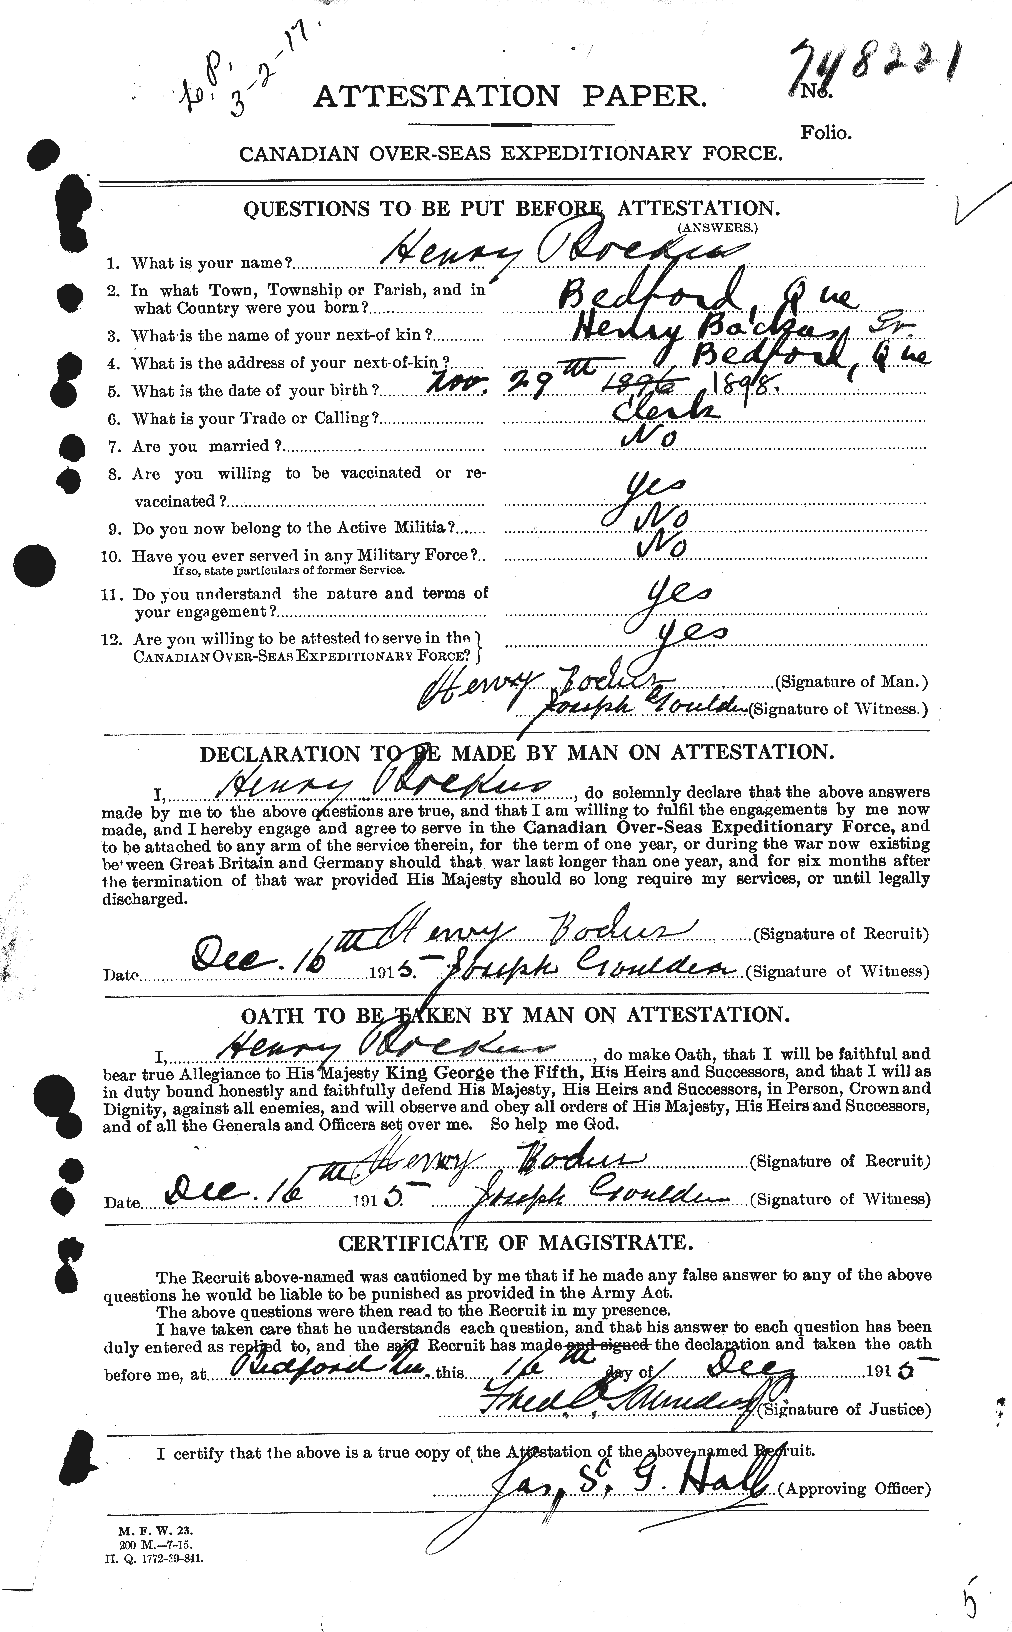 Dossiers du Personnel de la Première Guerre mondiale - CEC 245277a